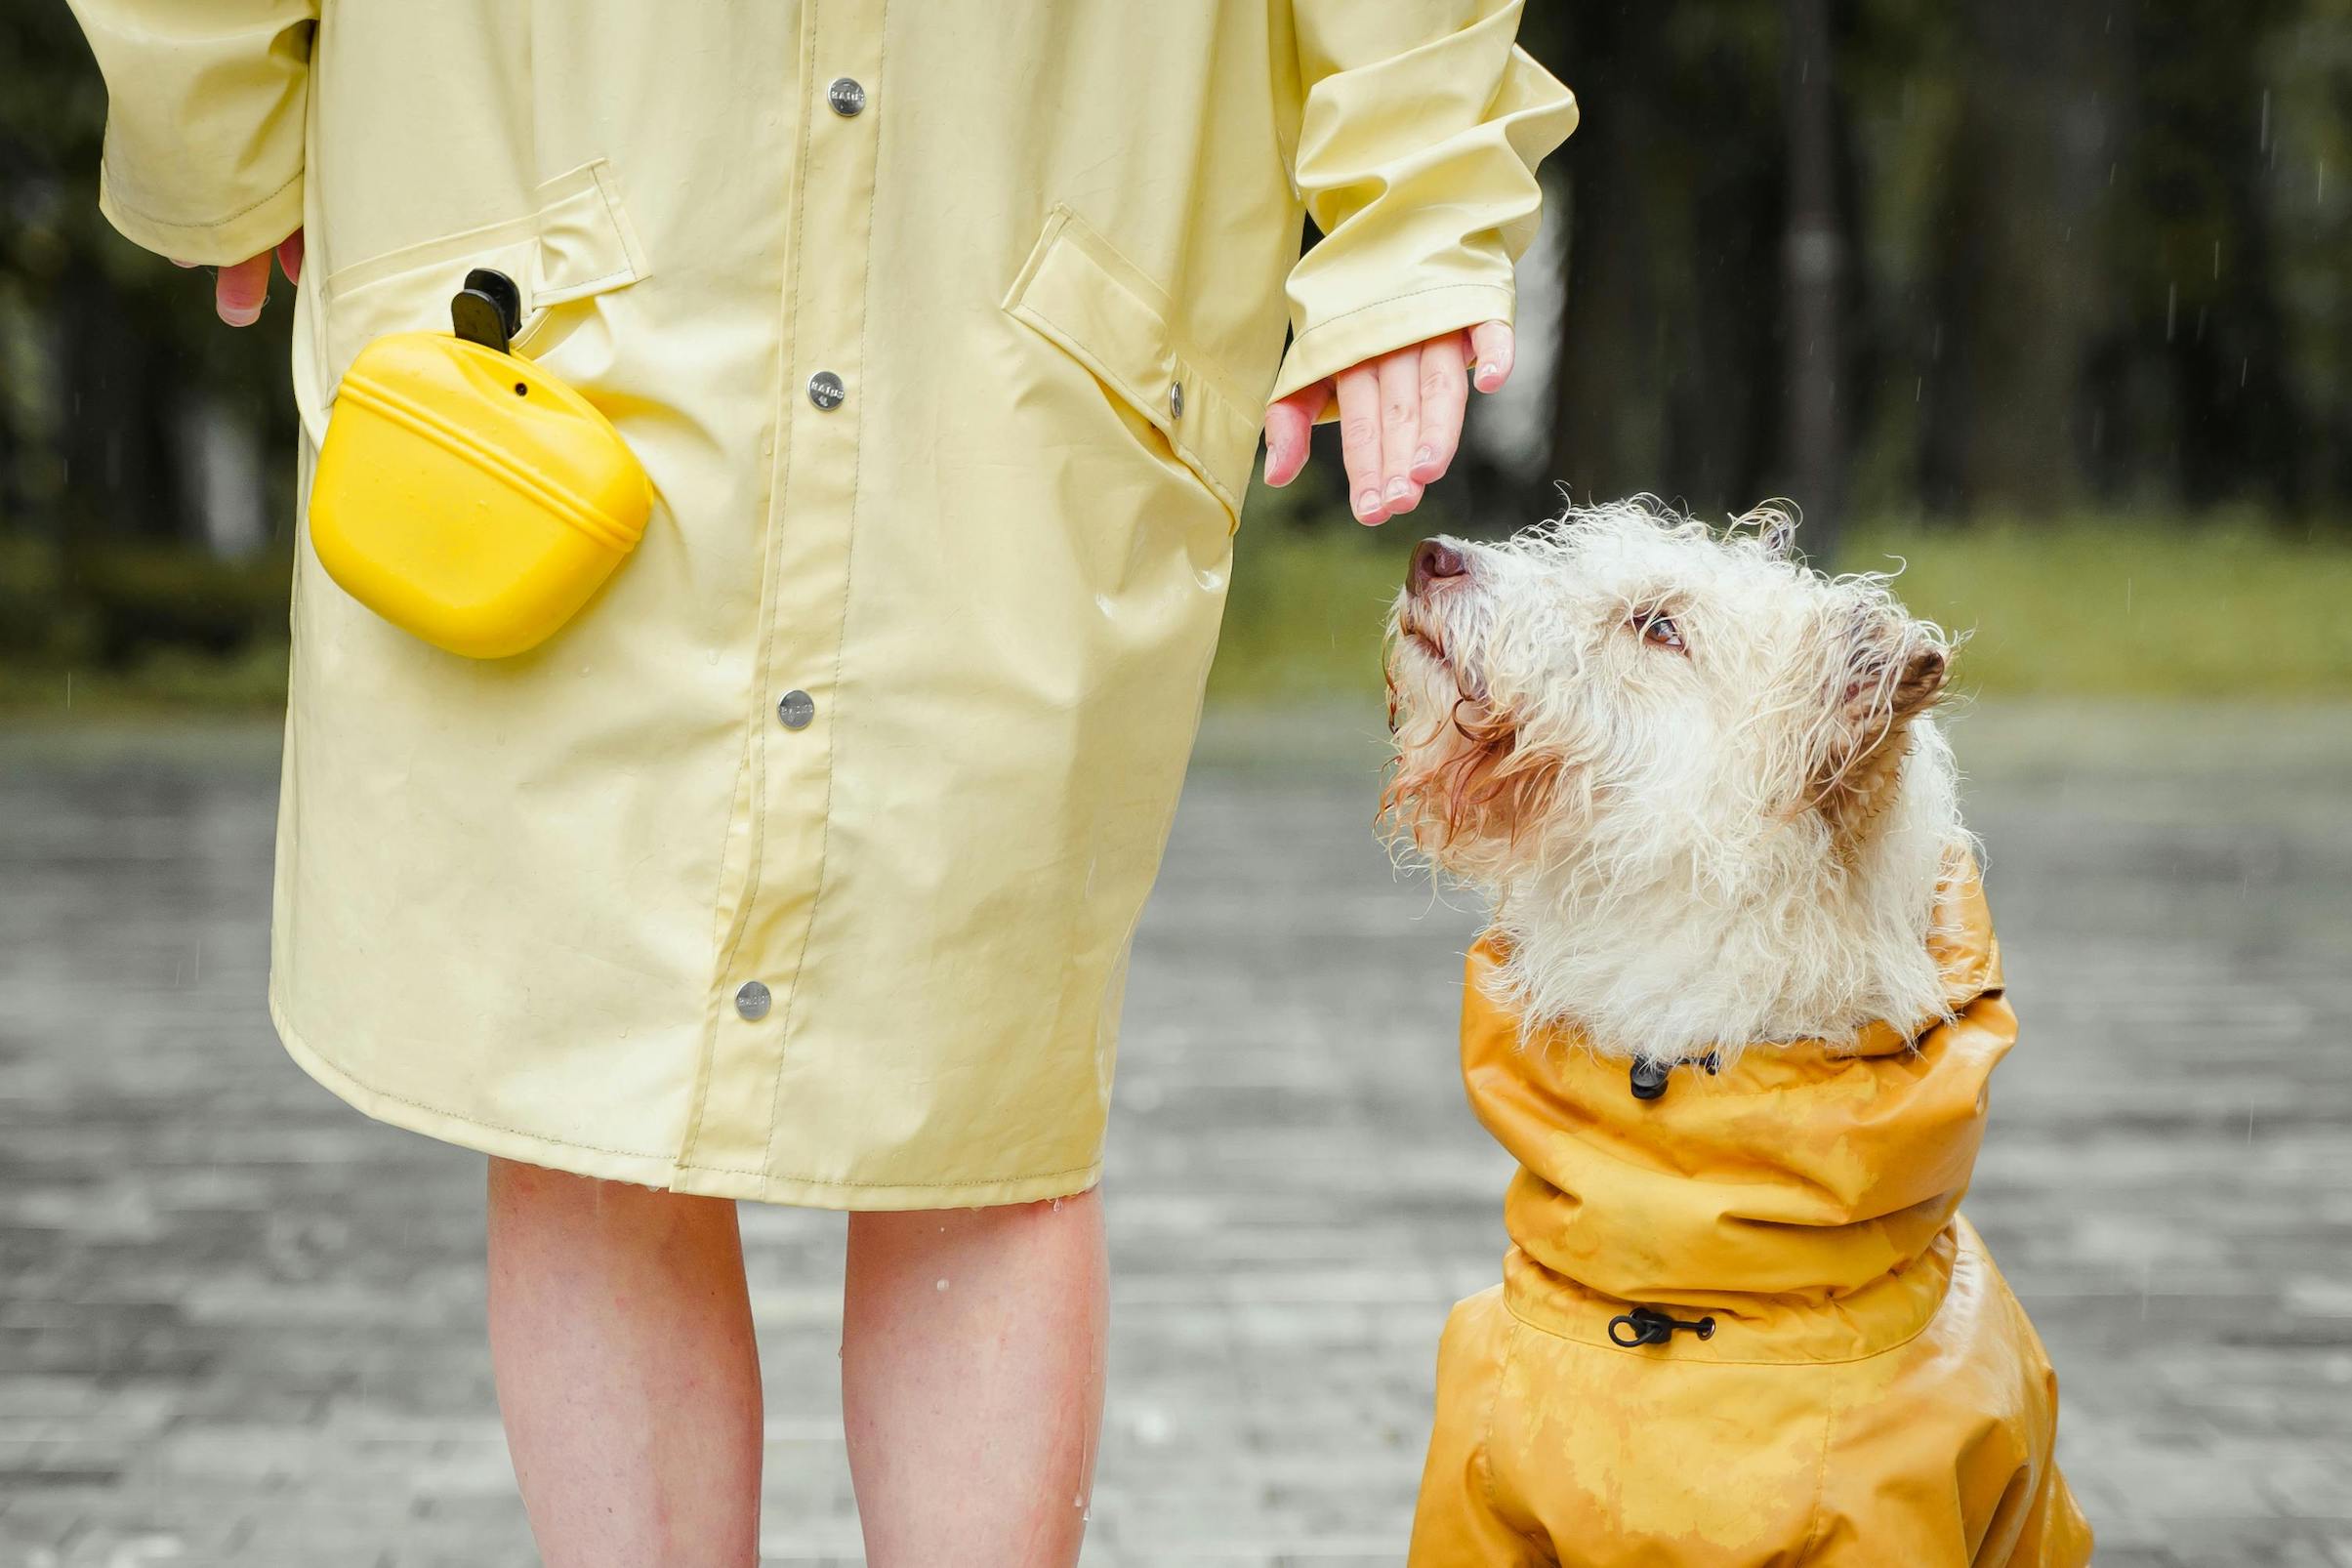 Frau steht im gelben Regenmantel neben Hund, der ebenfalls eine Regelnjacke trägt